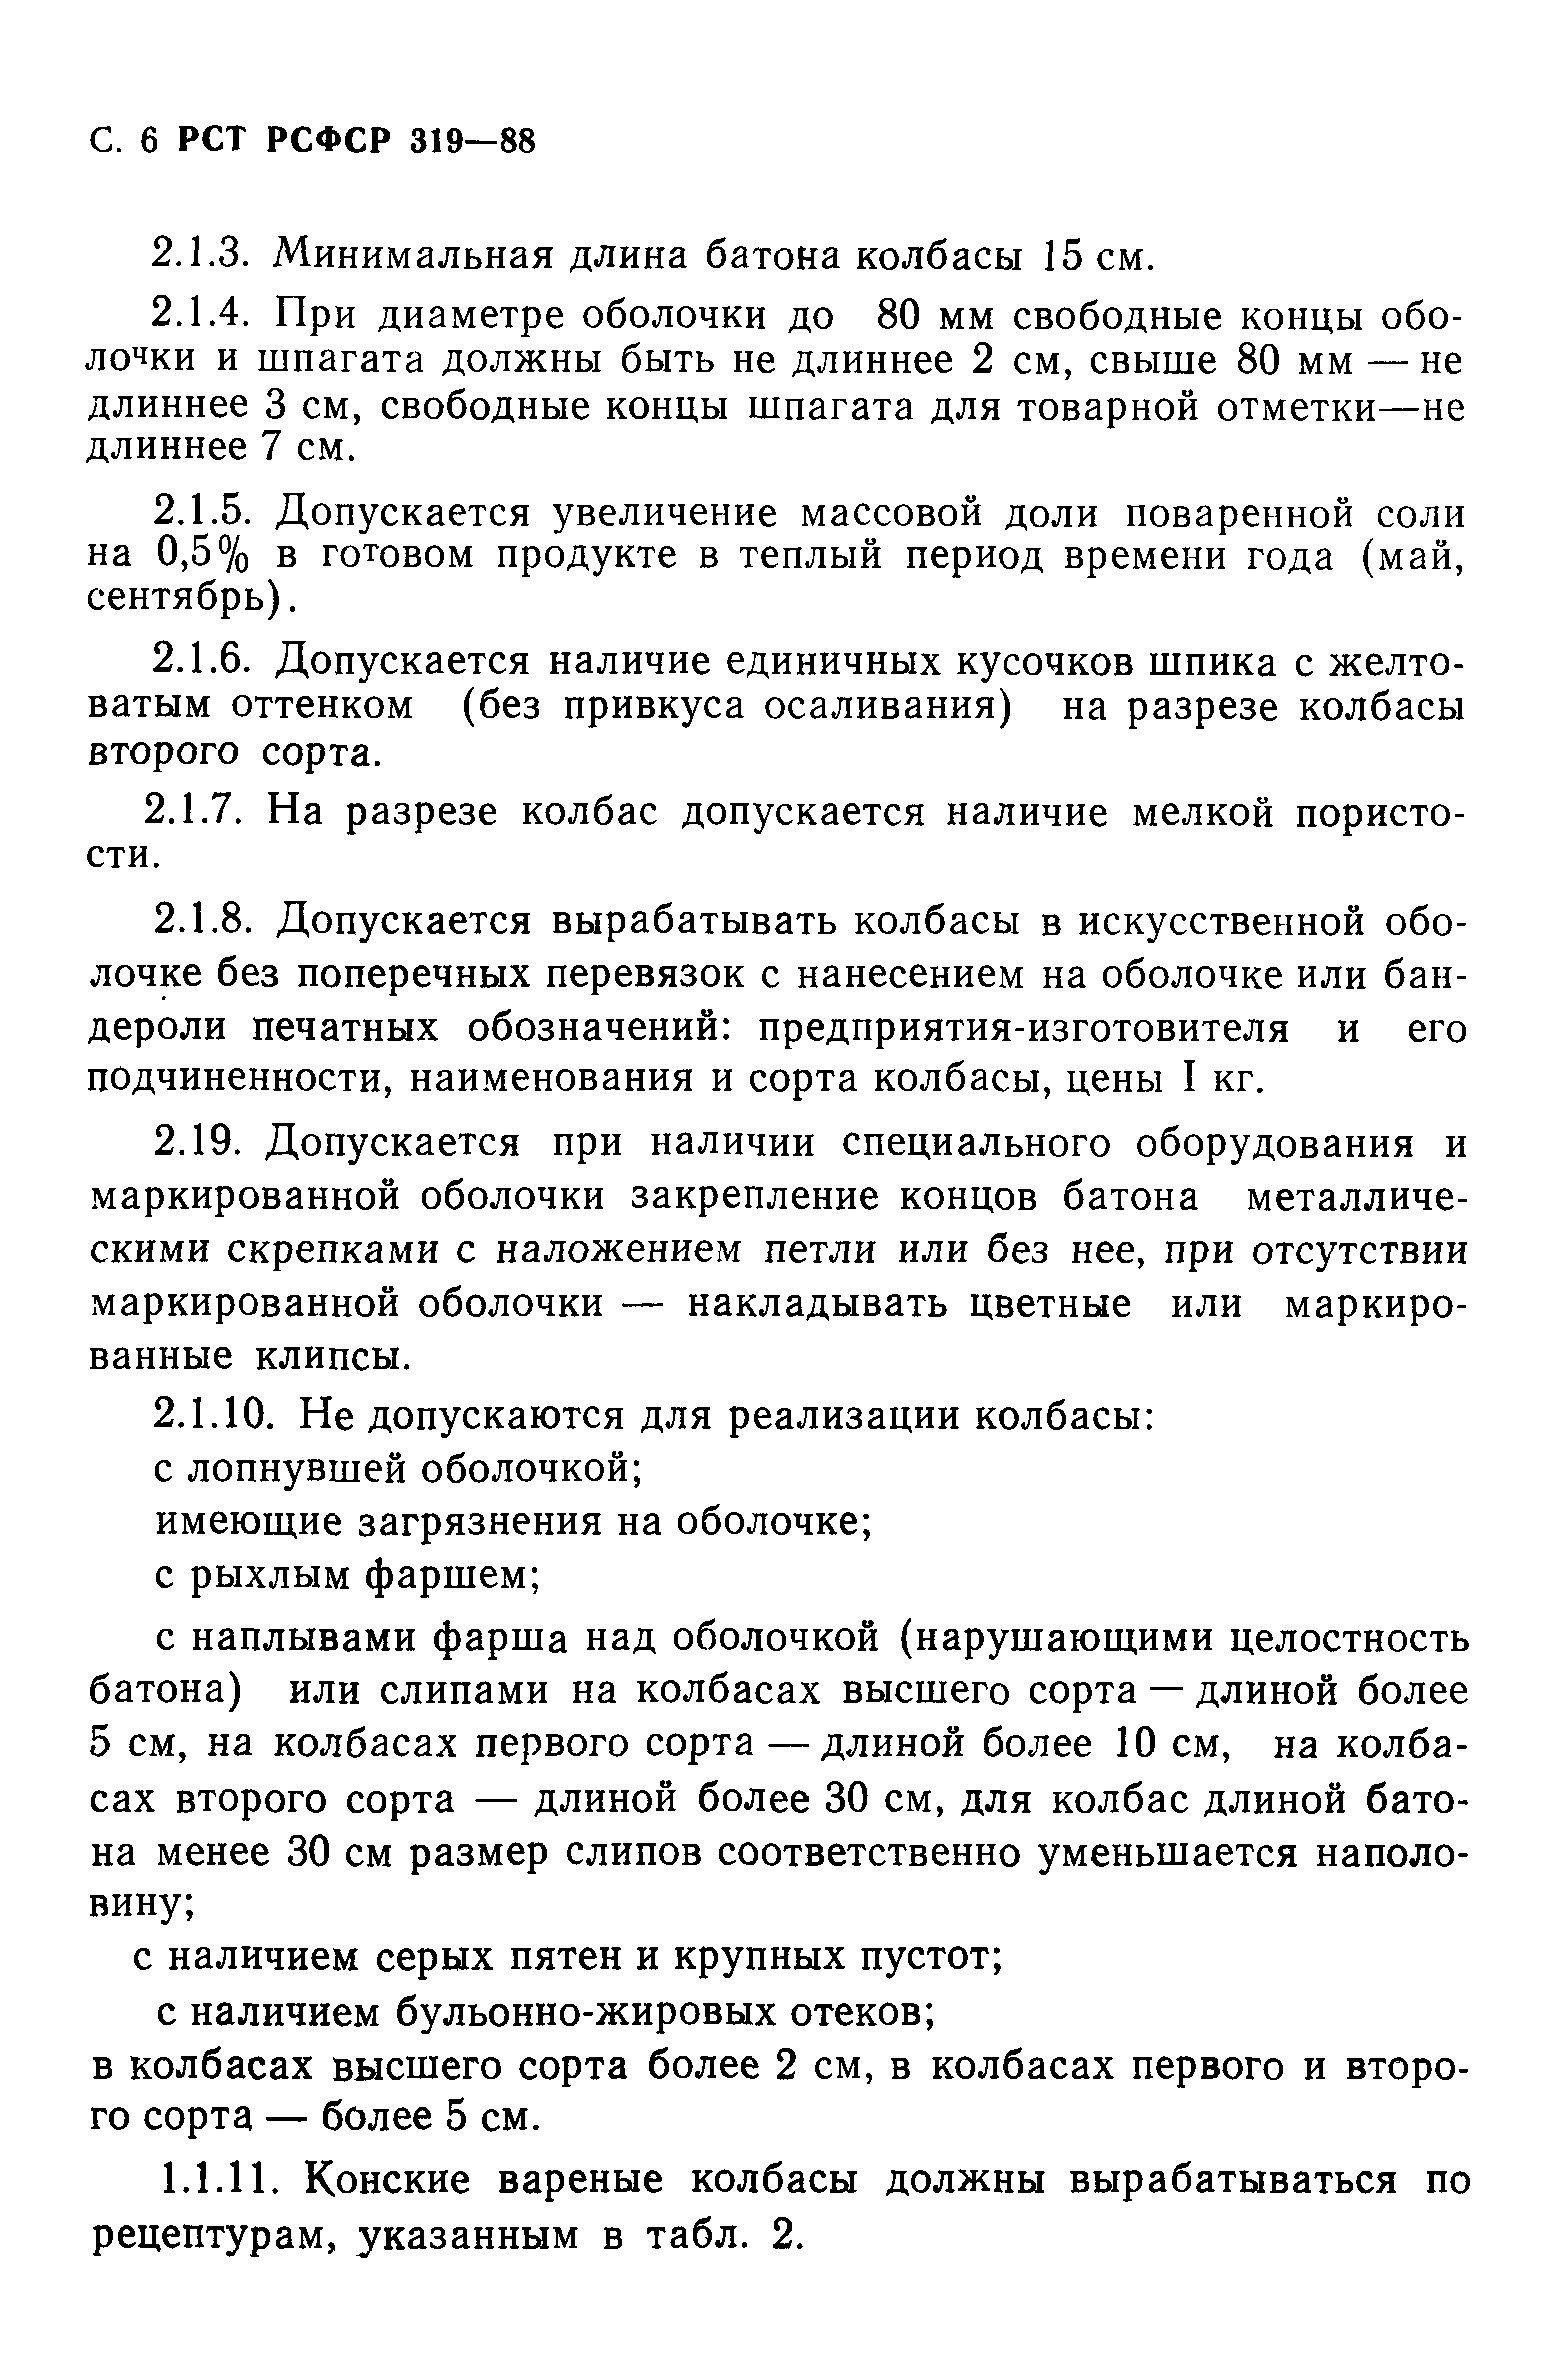 РСТ РСФСР 319-88